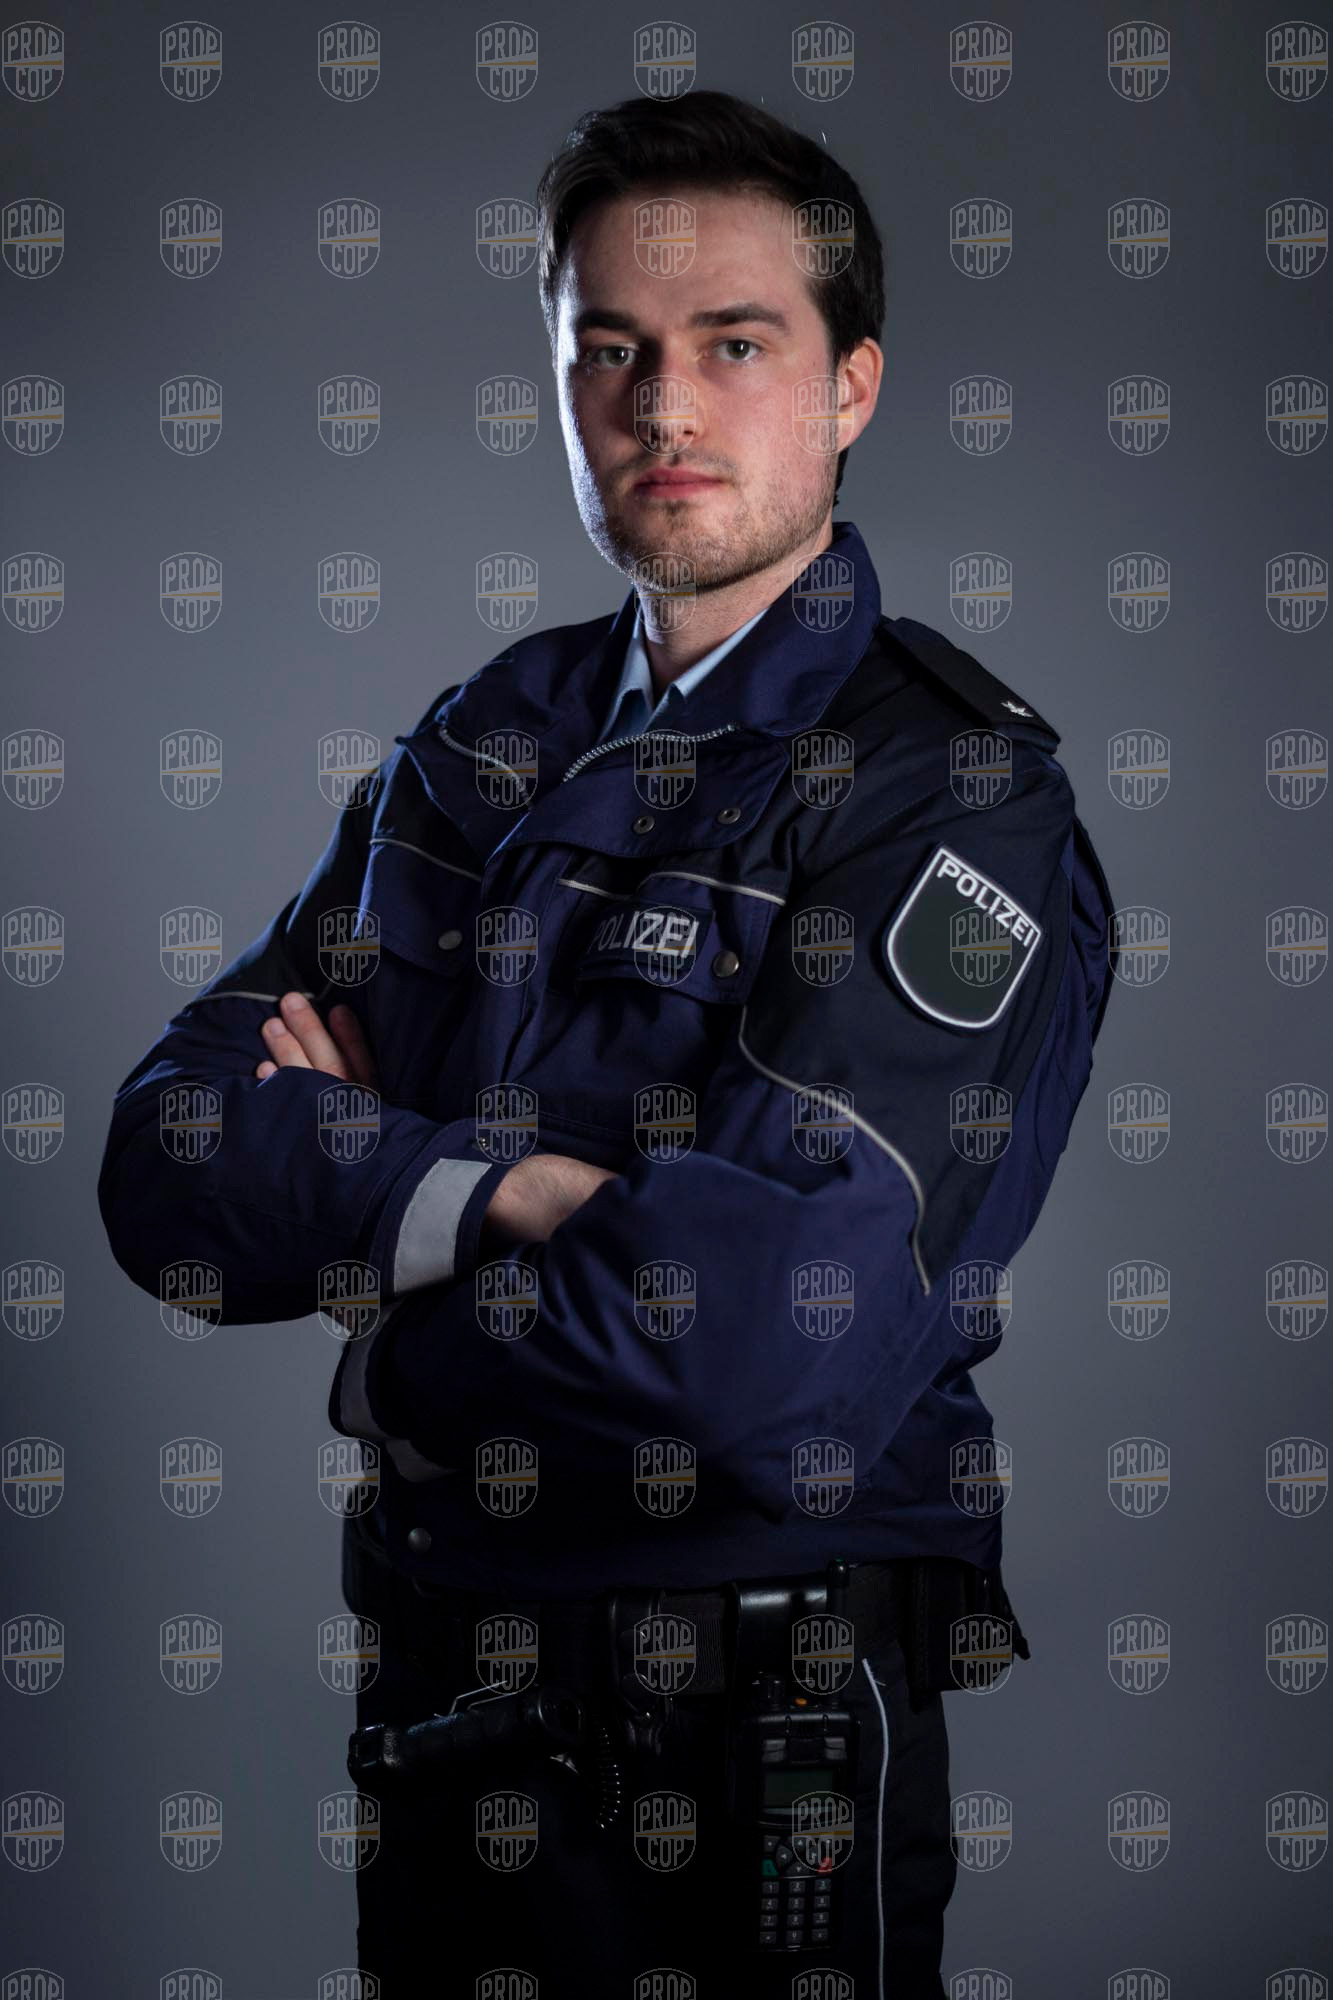 Polizist NRW